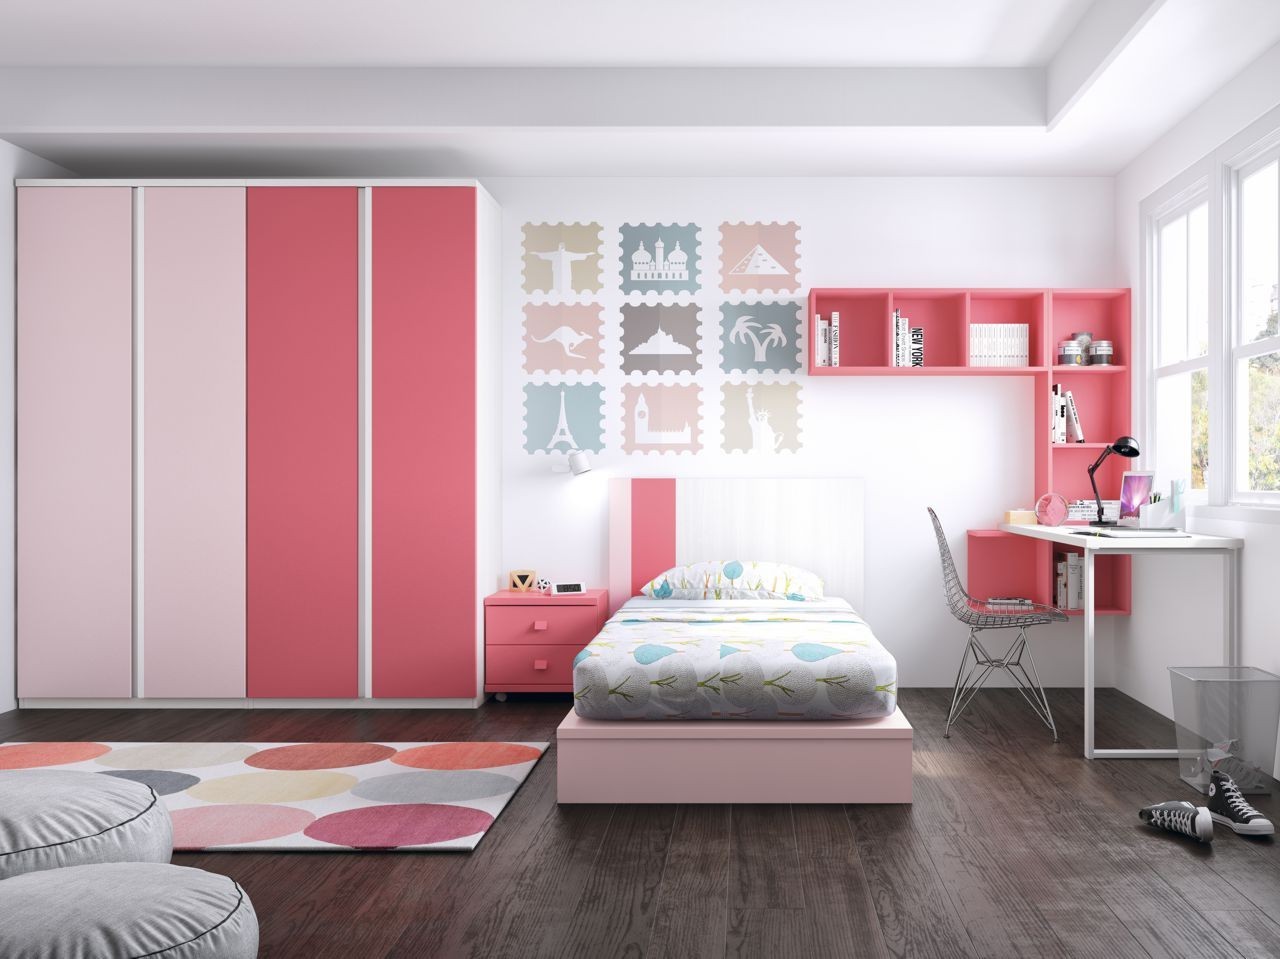 Dormitorio juvenil blanco, coral, rosa y tirador uñero modelo Formas